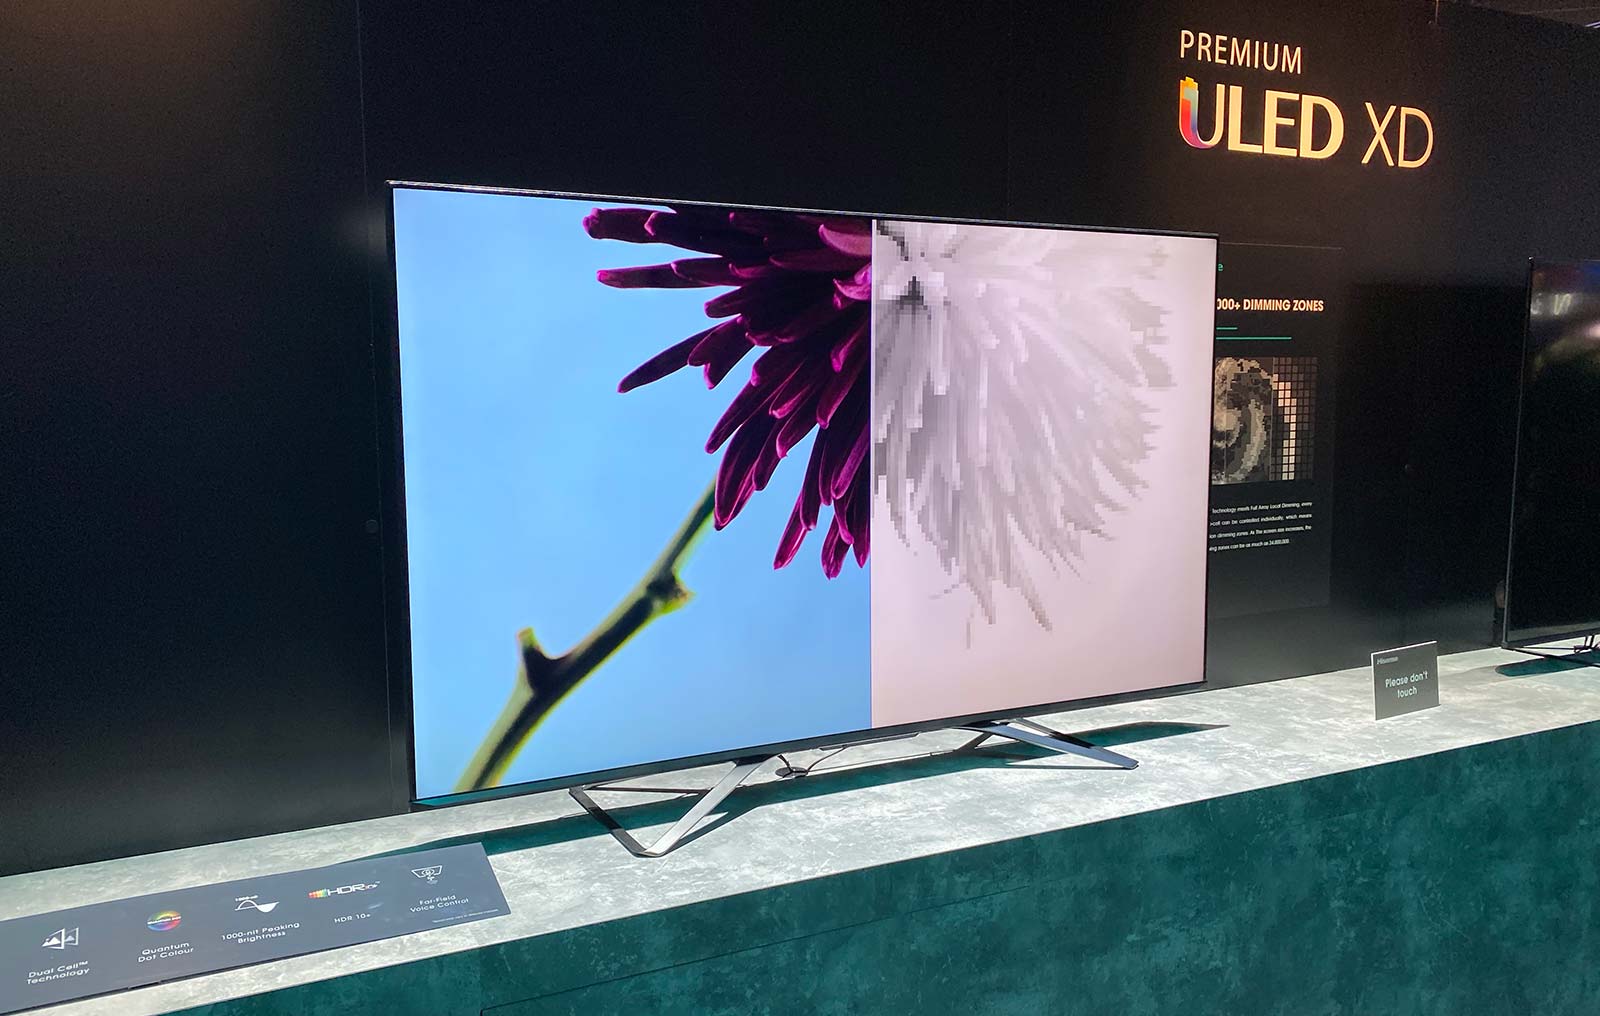 Hisense Dual Cell LED TV at CES 2020